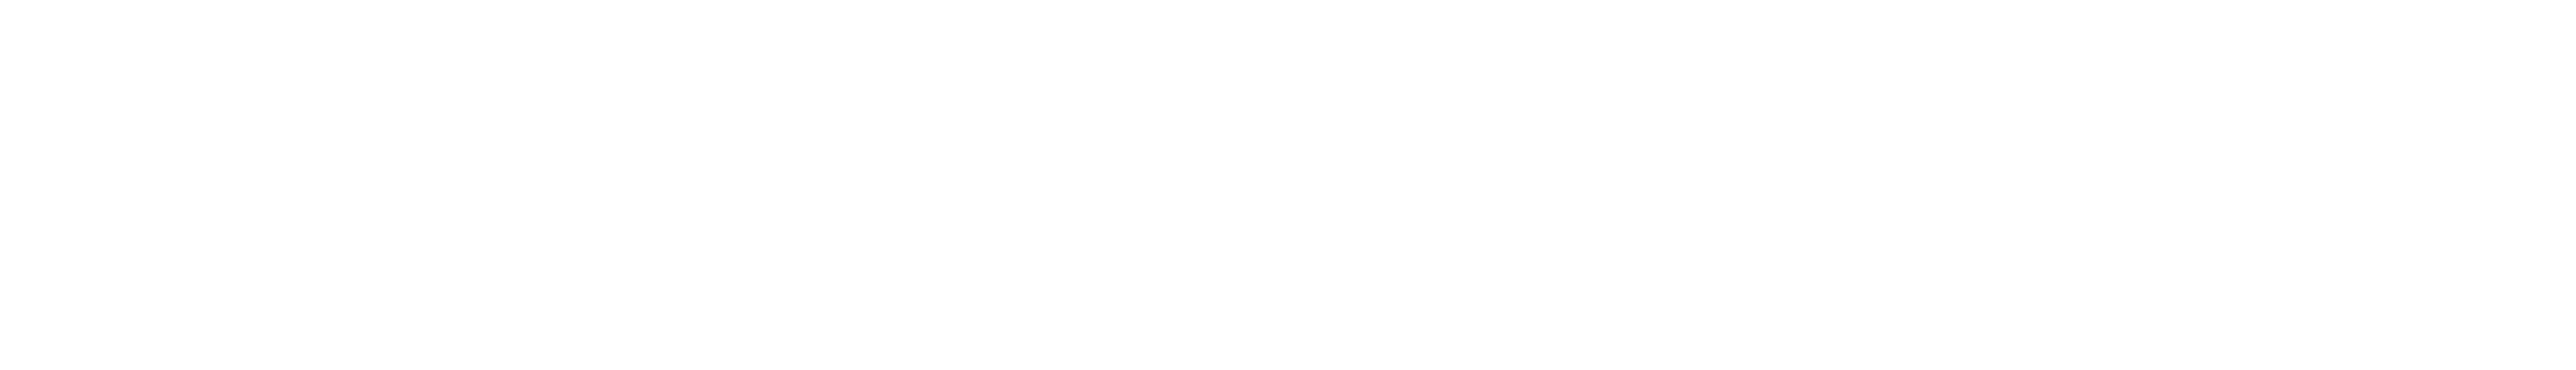 James Jt Brown Logo1